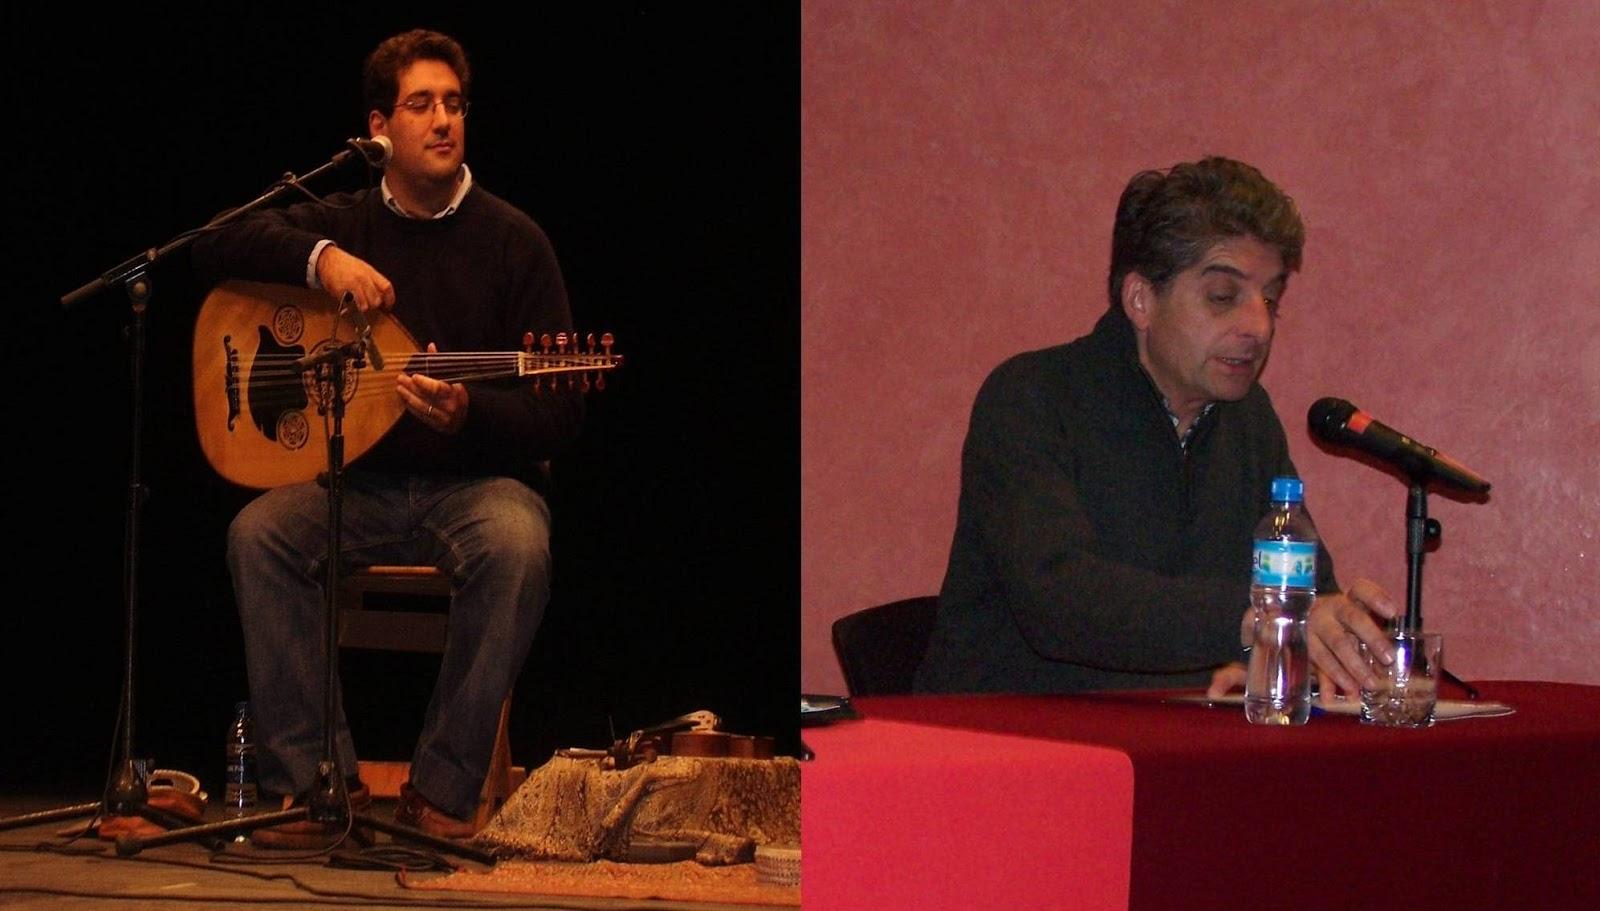 Conferencia y música andalusí: Cuentos de Al Andalus 